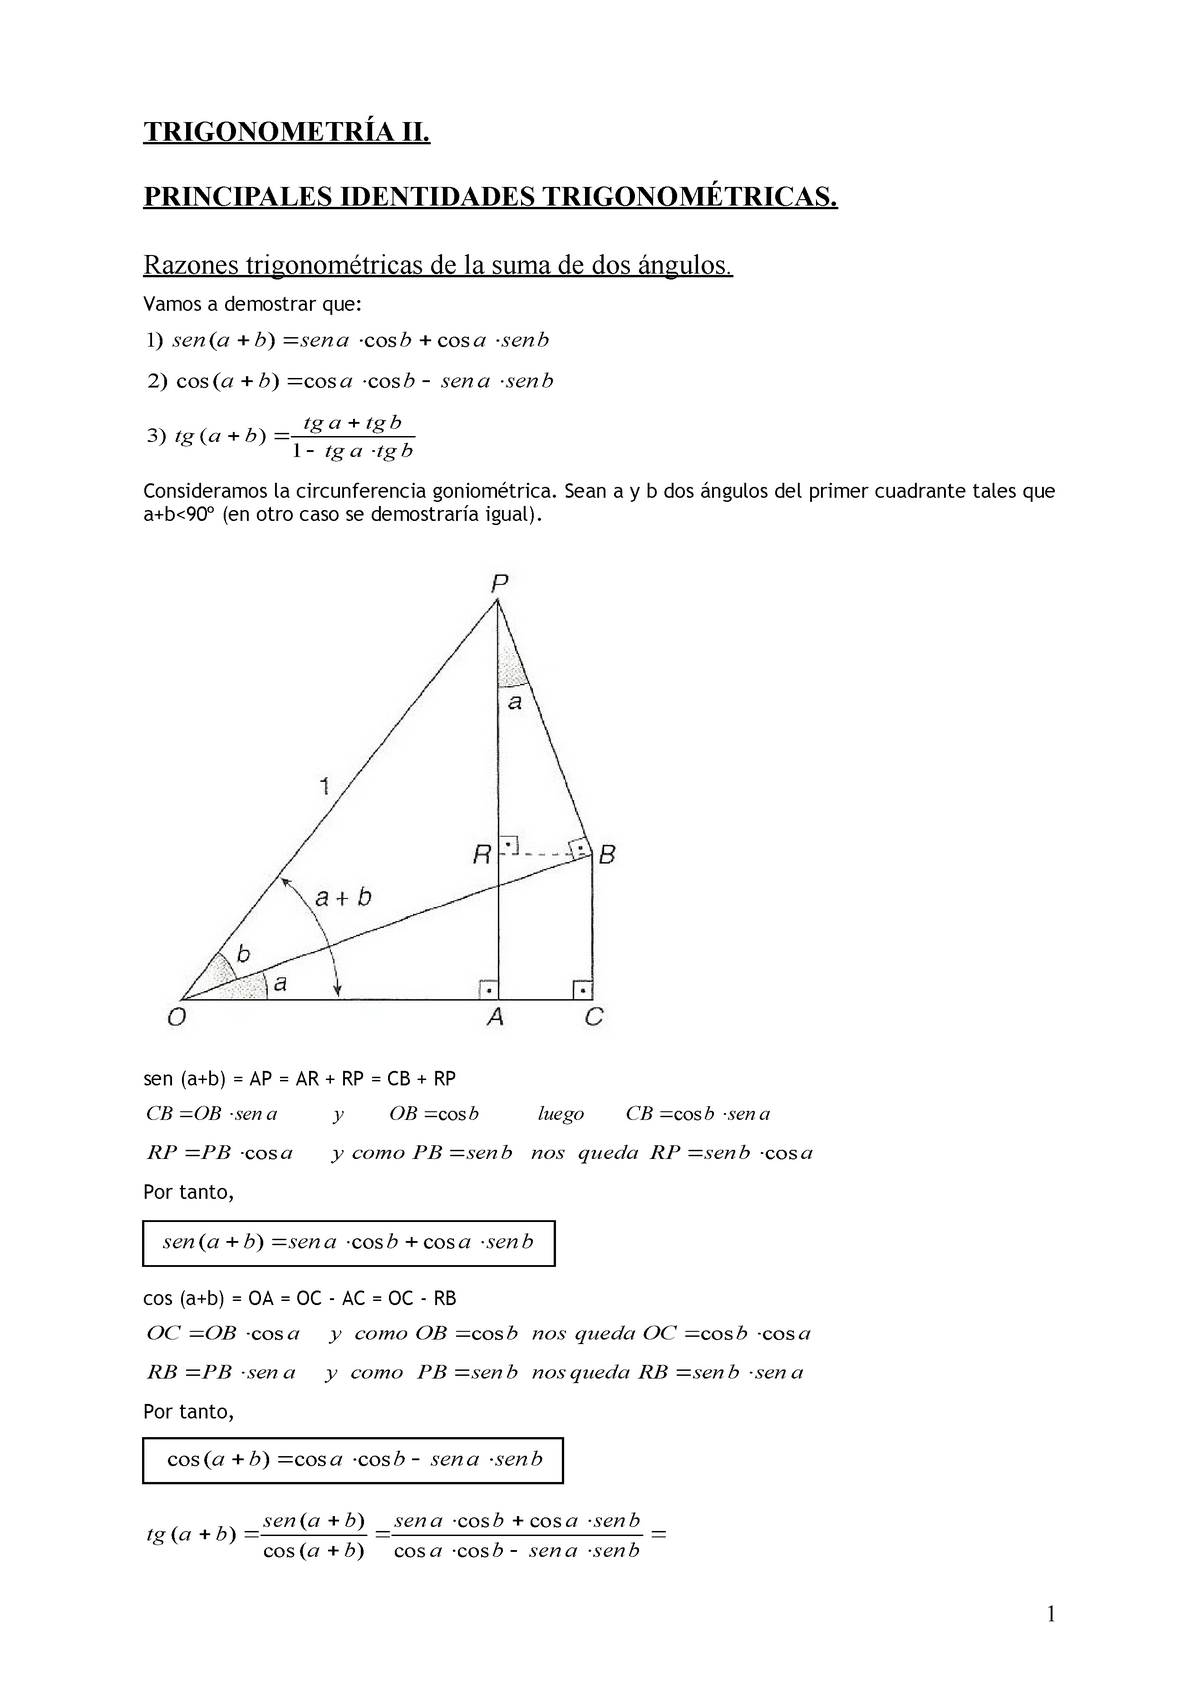 Trigonometria 2 Resumen De Demostraciones Y Fórmulas Para Trigonometría TrigonometrÍa Ii 3043